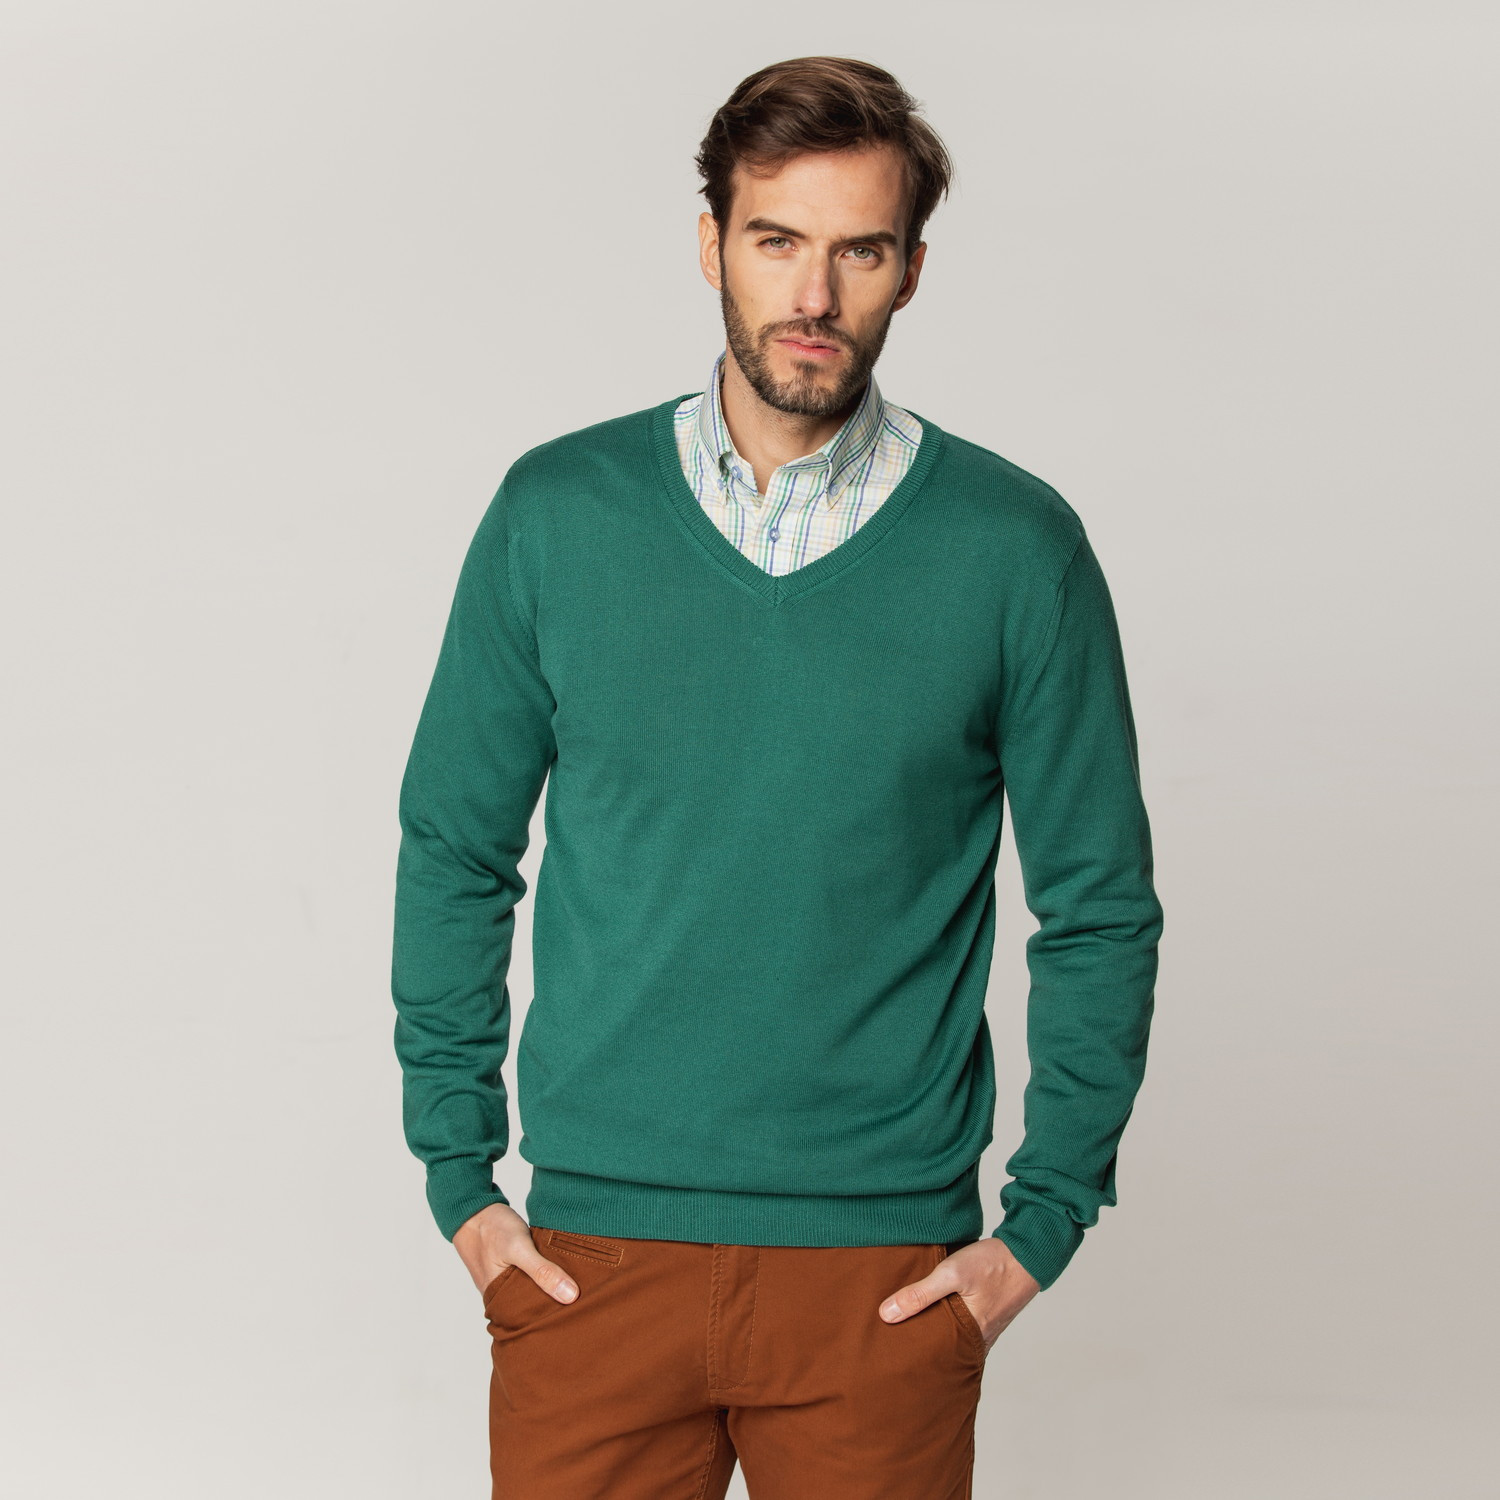 Zielony sweter z dekoltem w szpic